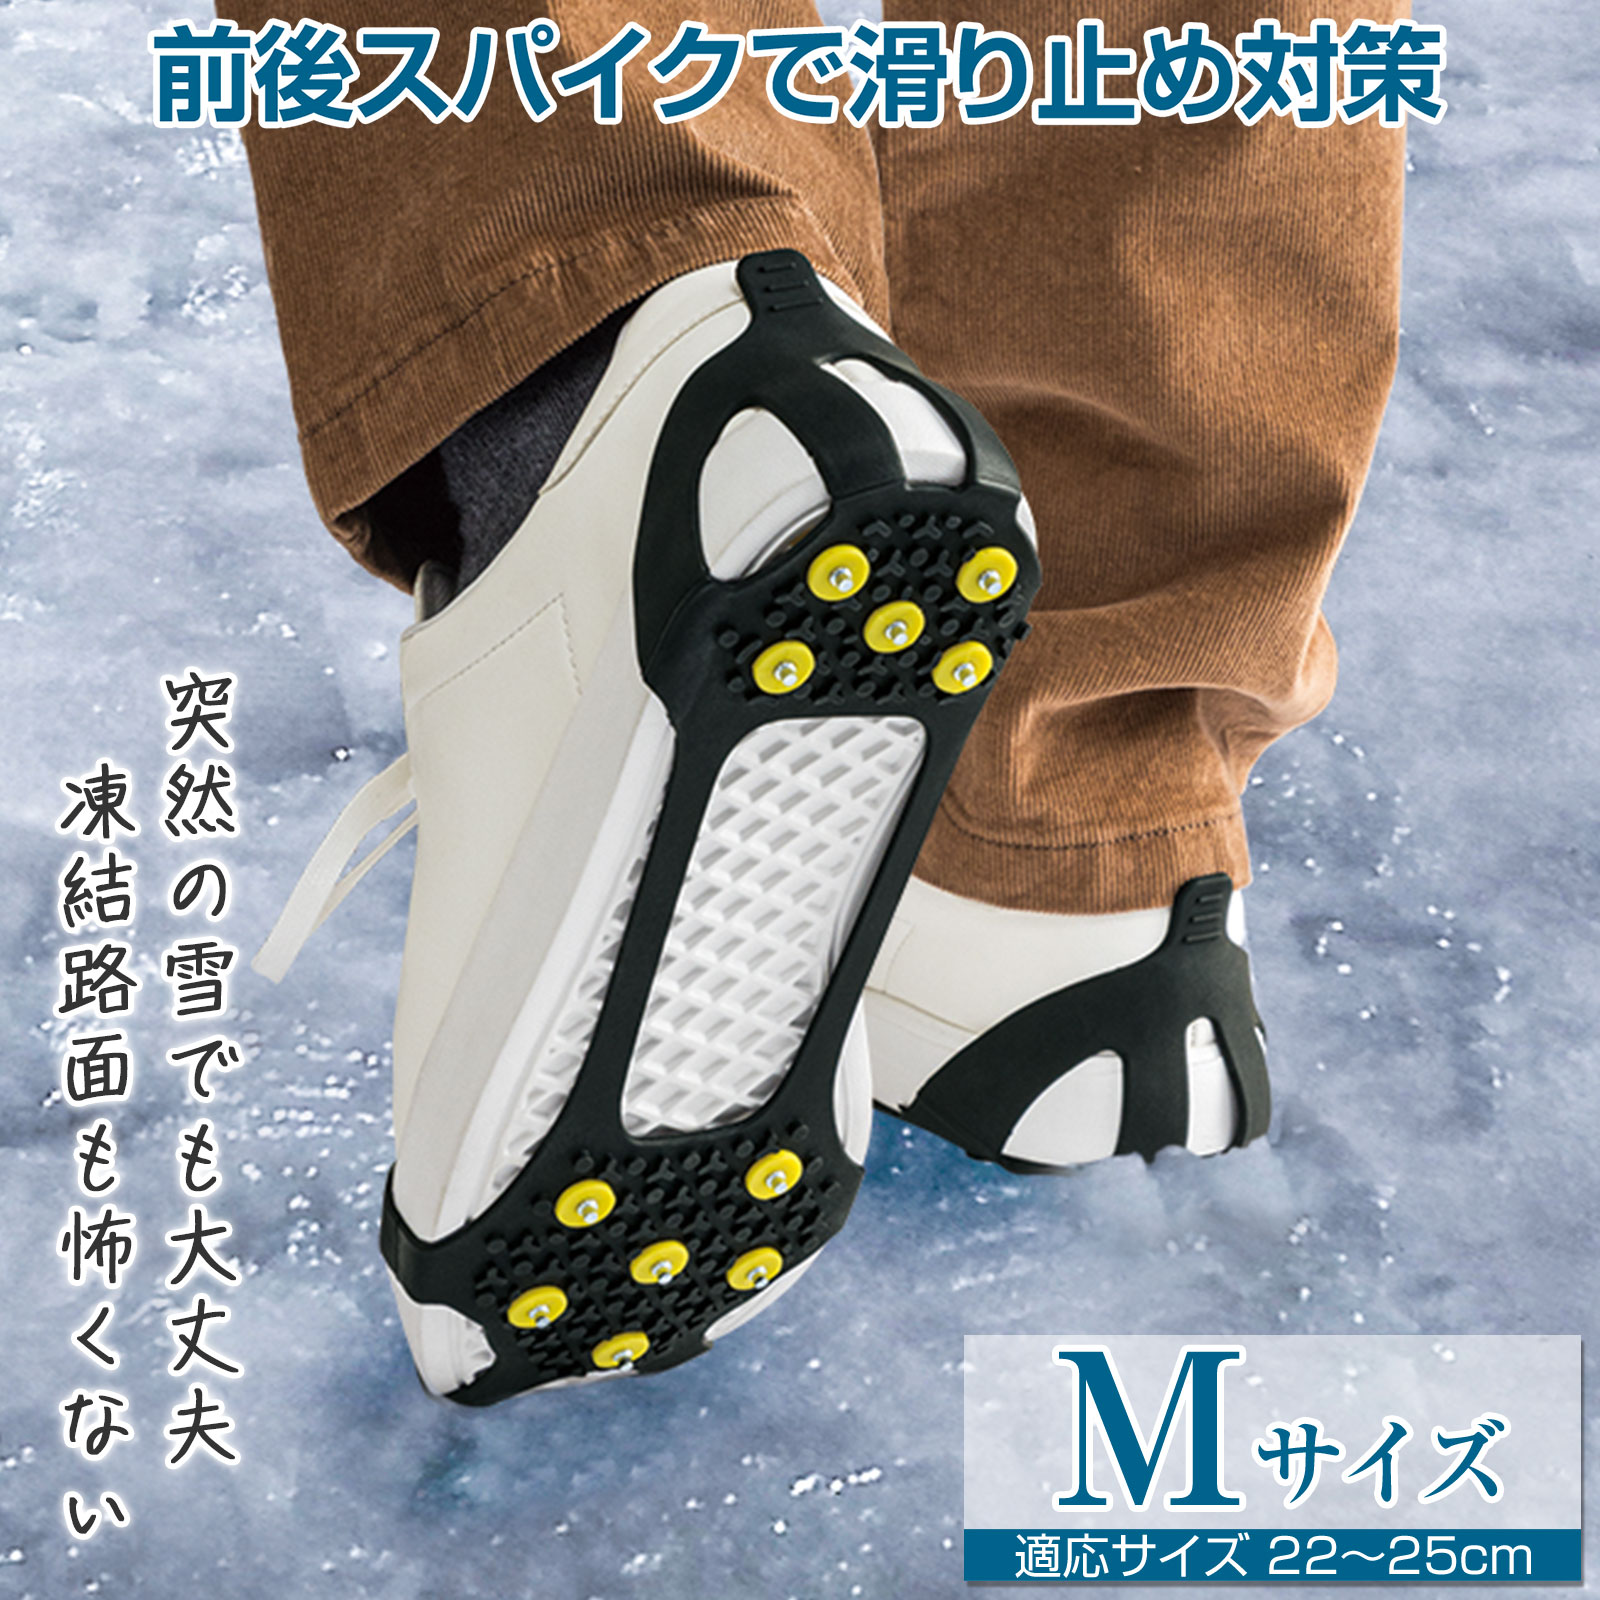 【楽天市場】送料無料 靴底用スパイク フルタイプ Lサイズ (適応 